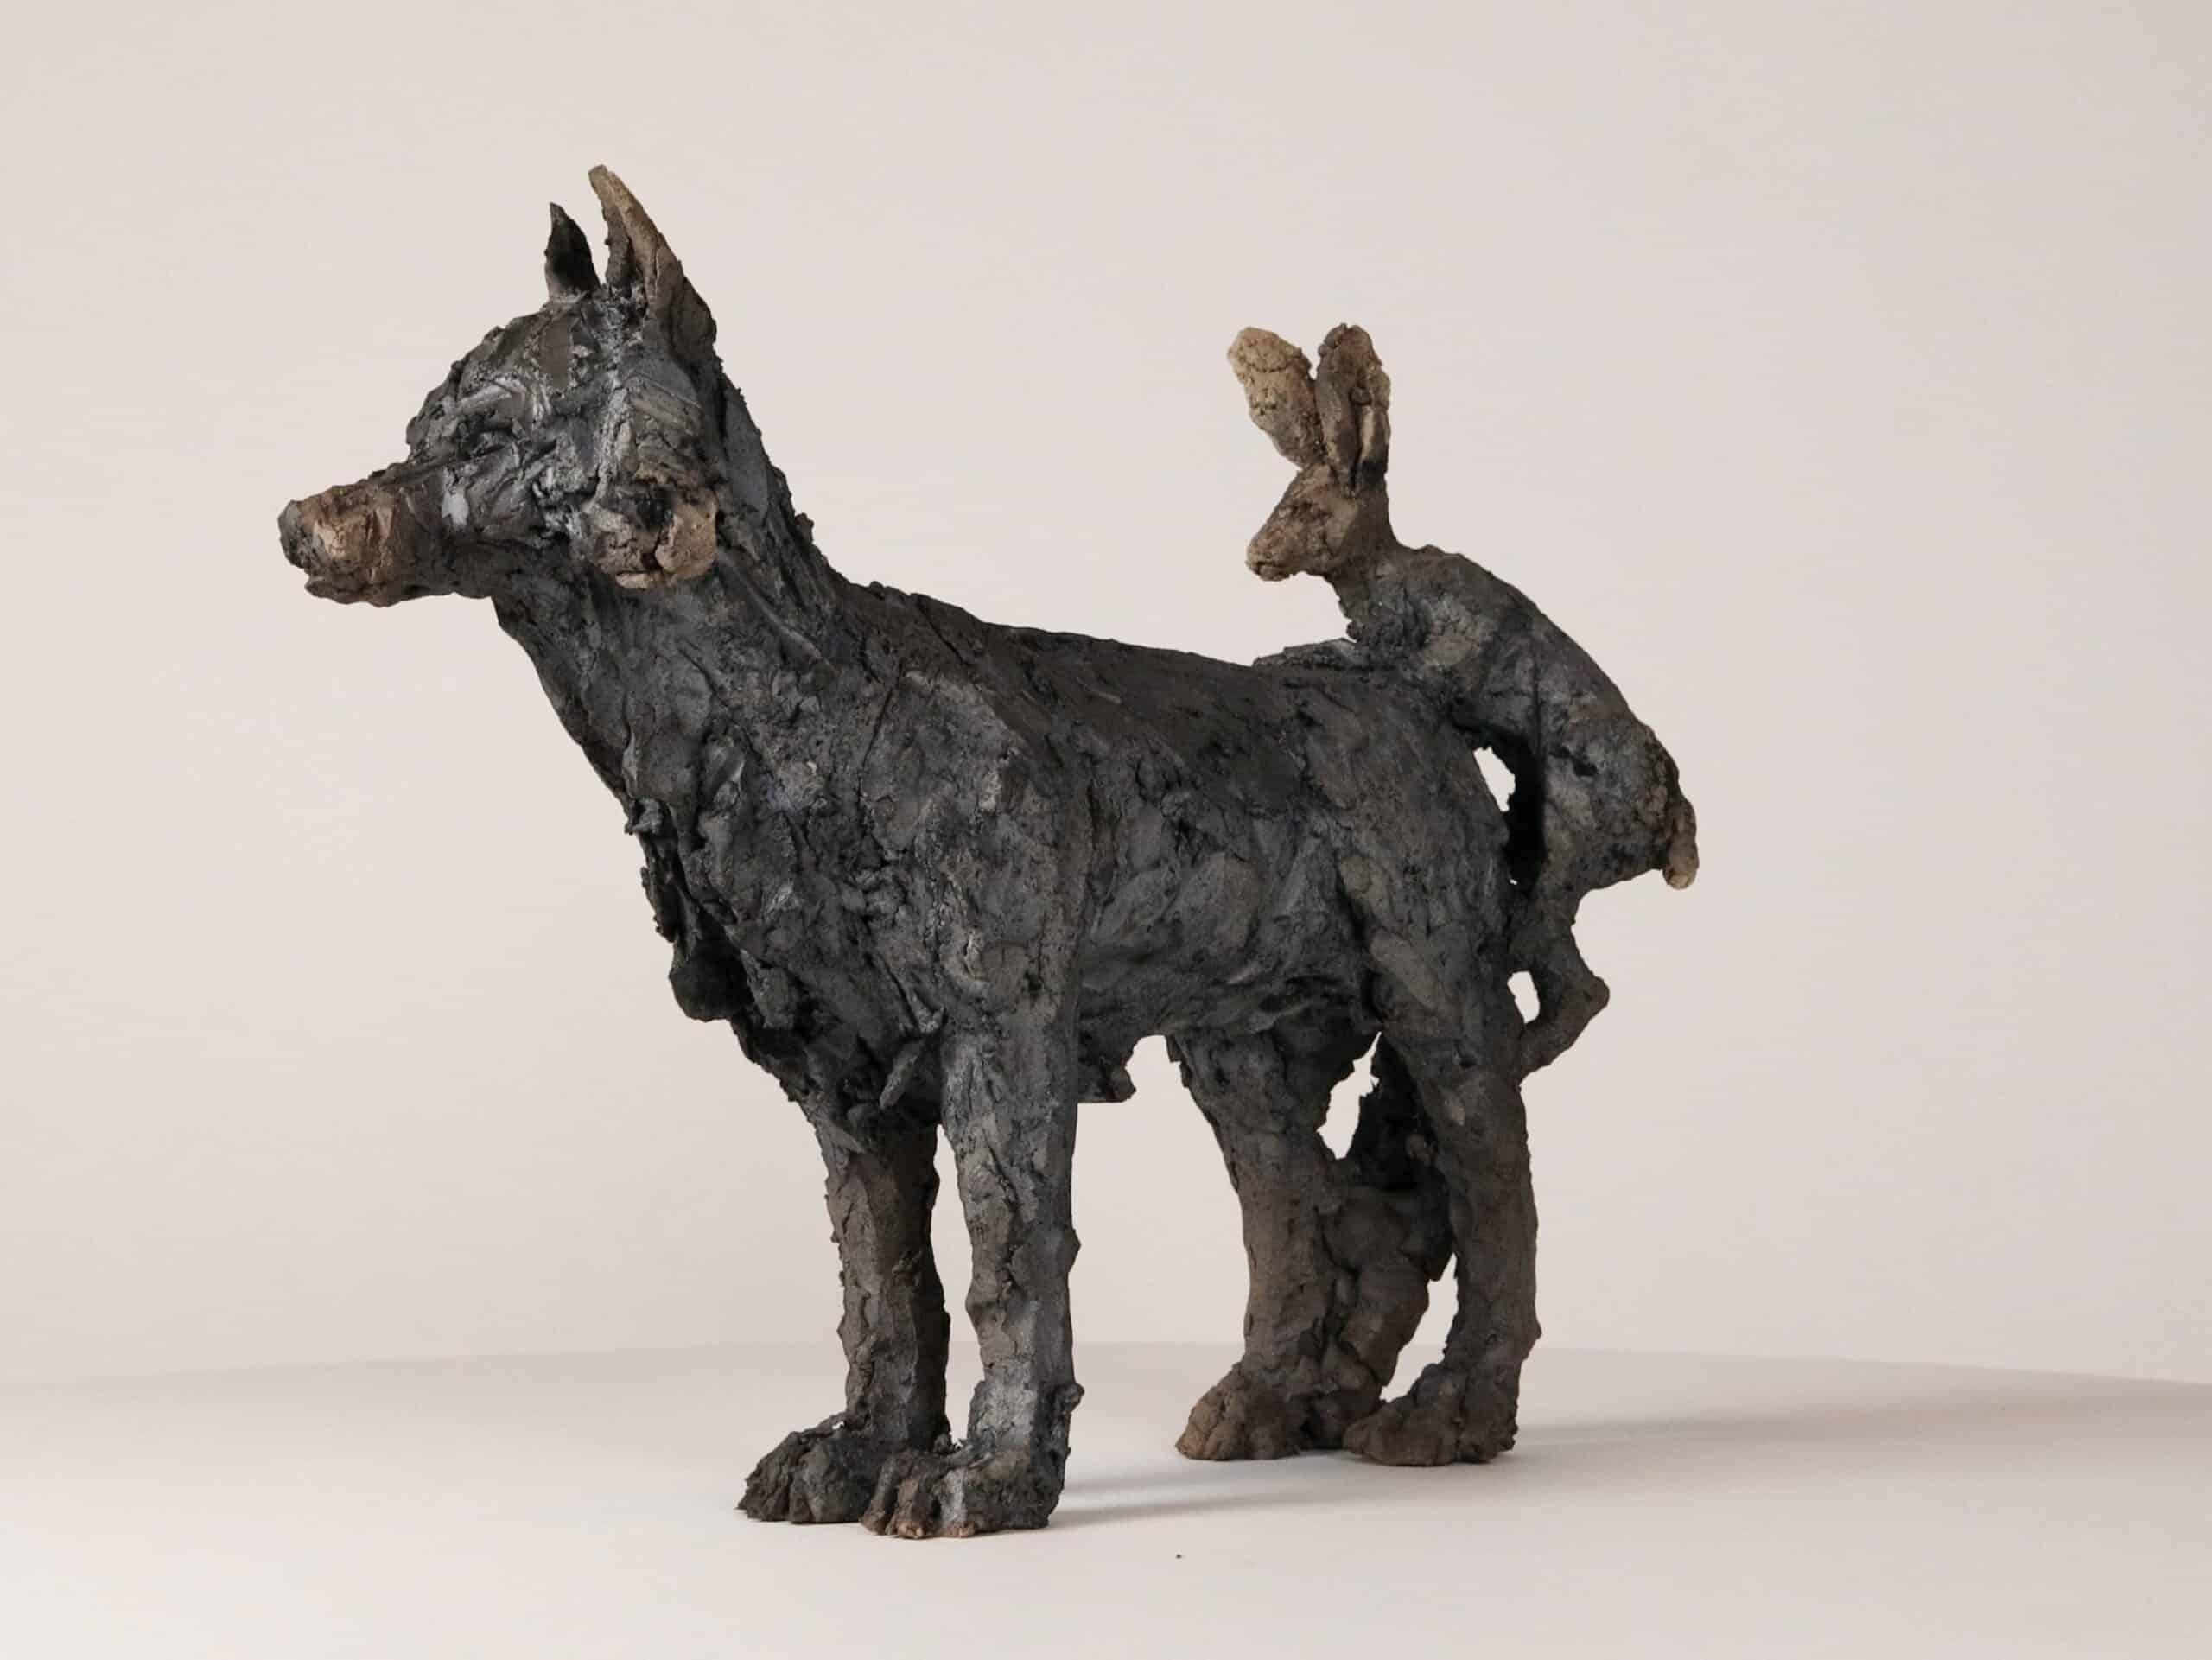 Lièvre et loup est une sculpture unique en grès cuit à la fumée de l'artiste contemporaine française Cécile Raynal, dont les dimensions sont de 33 × 42 × 16 cm (13 × 16,5 × 6,3 in). 

La sculpture représente une scène ironique : un lièvre est